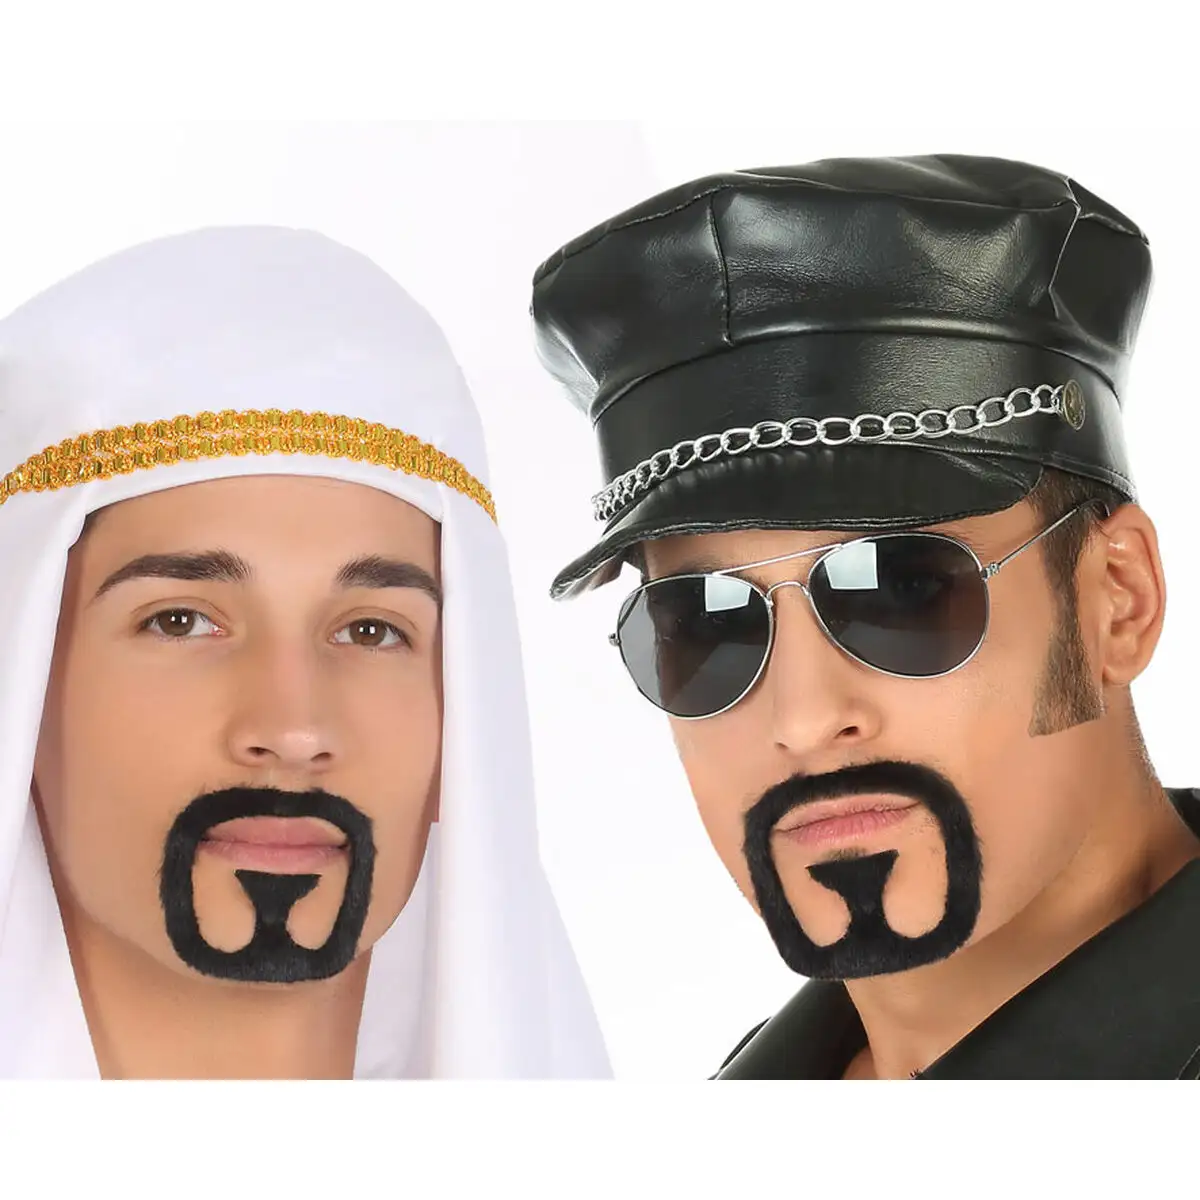 Moustache noir accessoires de costumes arabe_5928. DIAYTAR SENEGAL - Où la Tradition Renouvelée Rencontre l'Innovation. Explorez notre gamme de produits qui fusionnent l'héritage culturel avec les besoins contemporains.